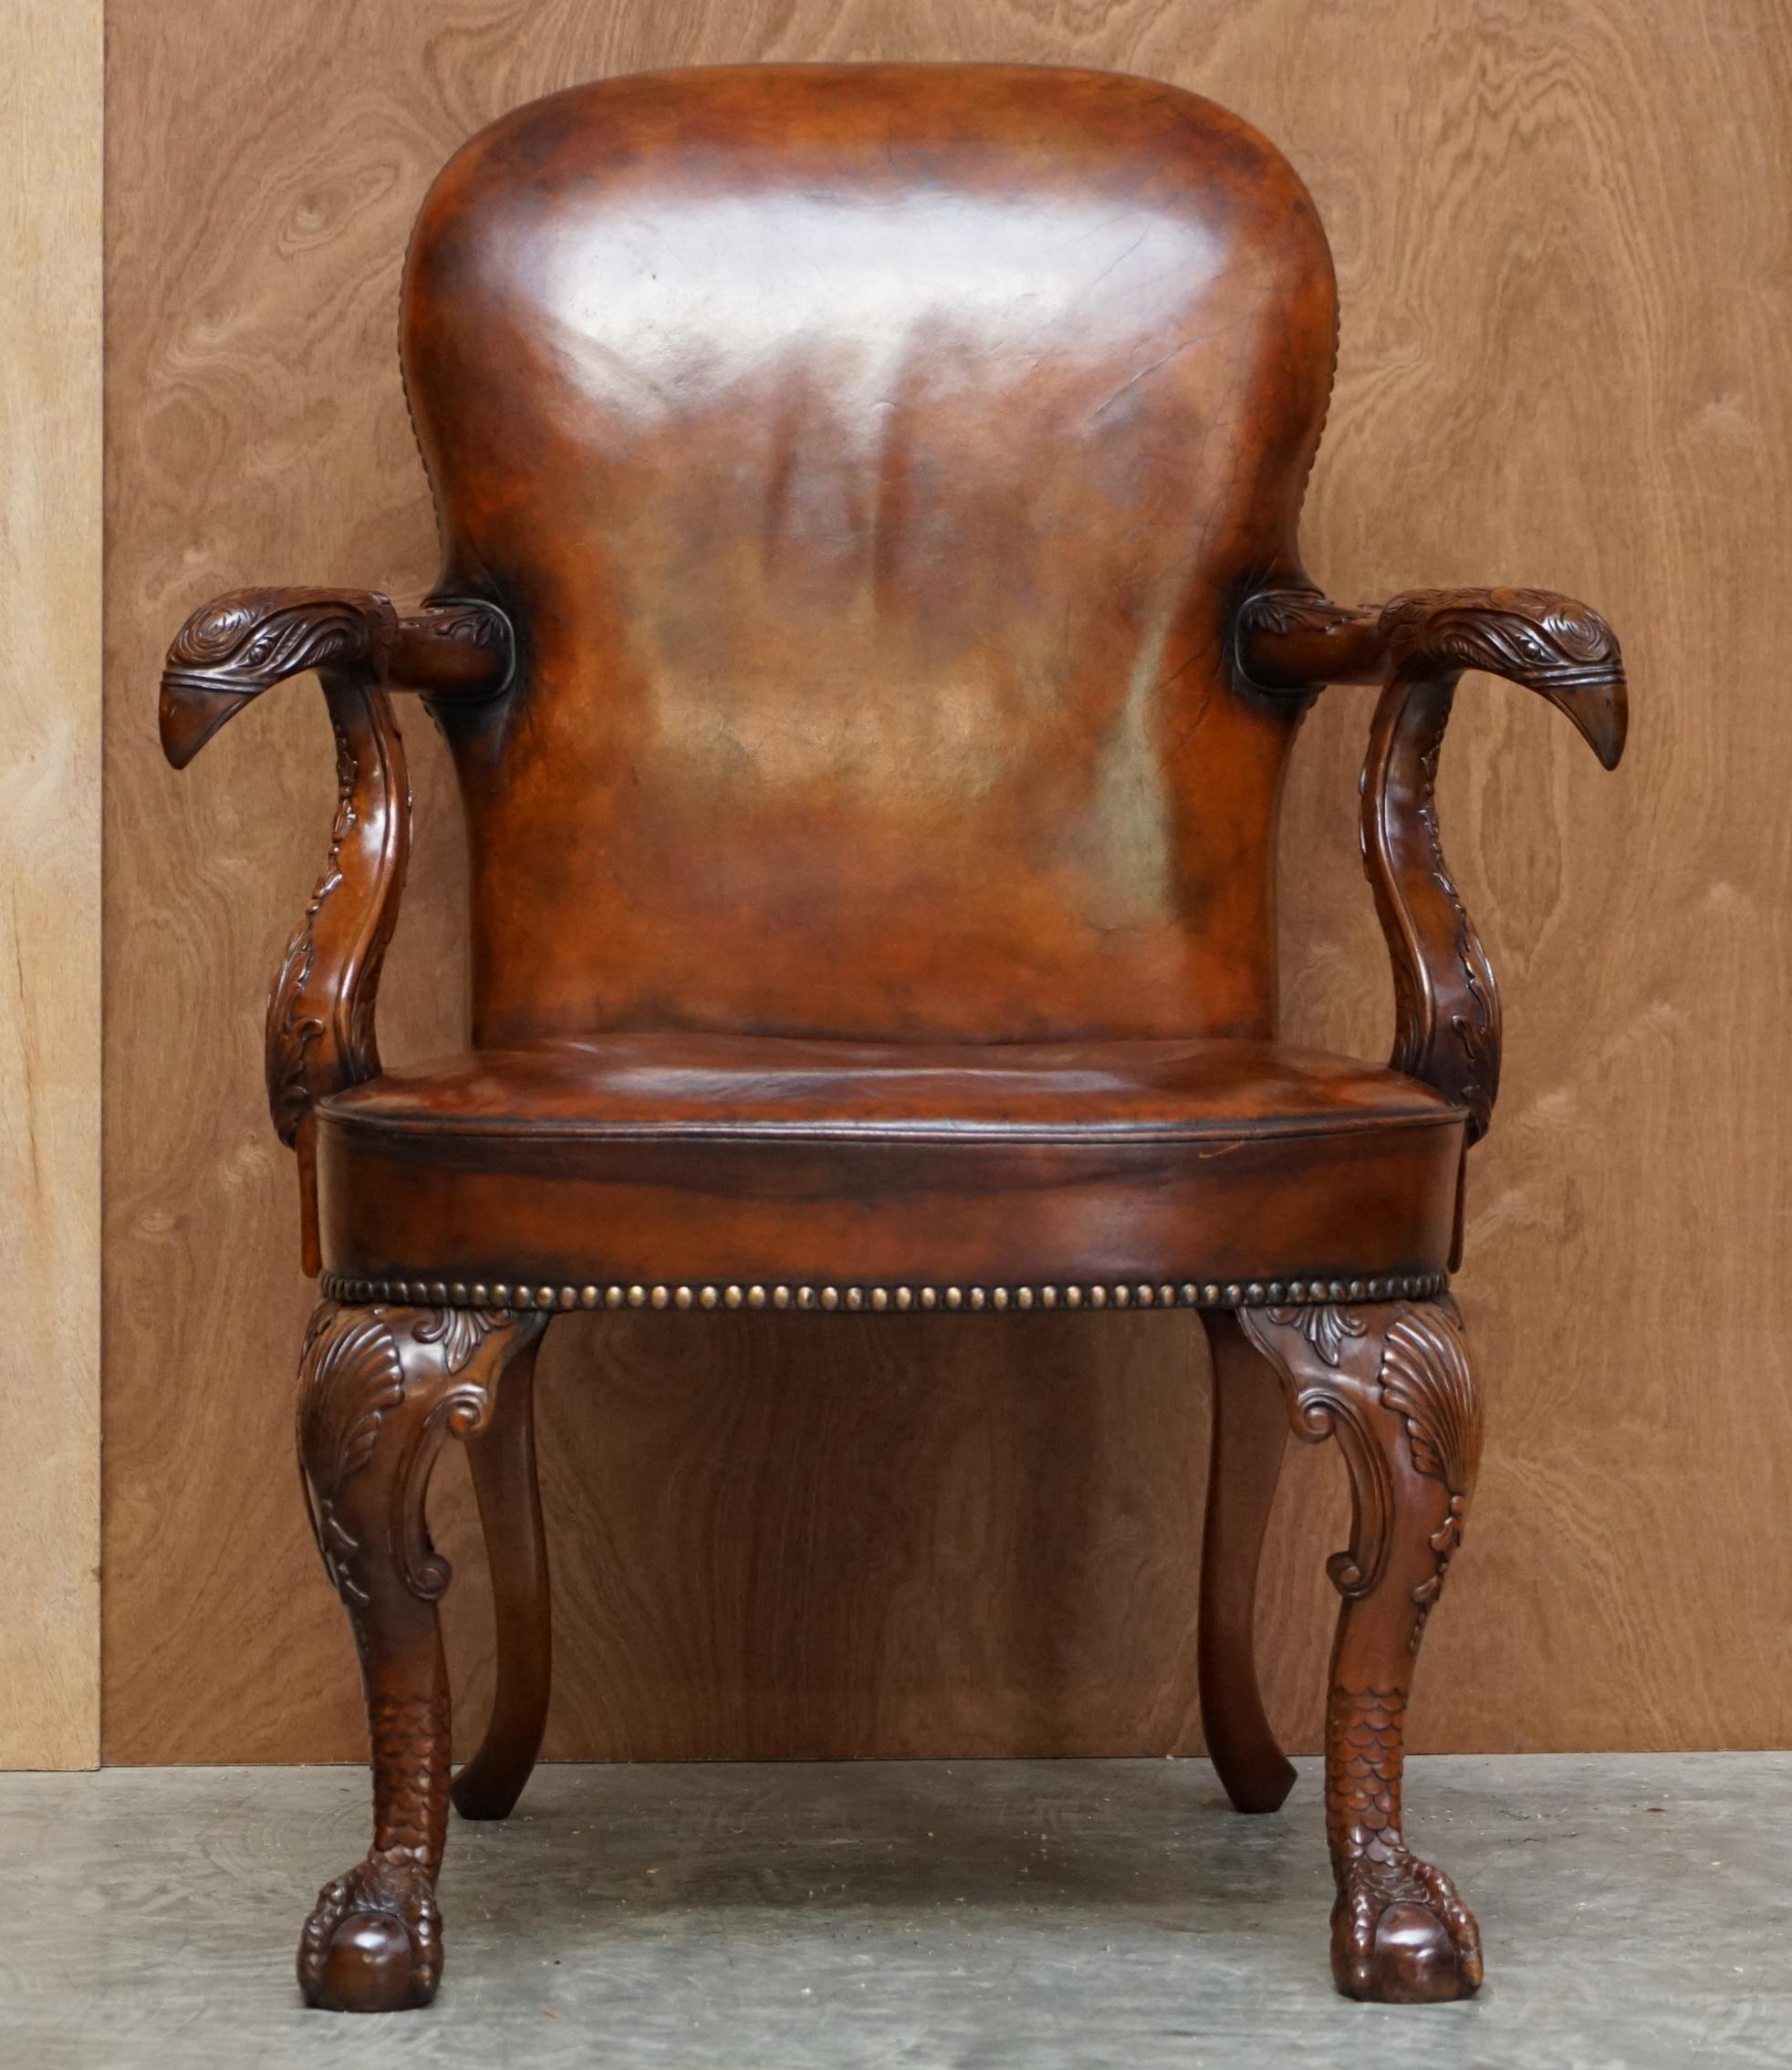 Nous avons le plaisir d'offrir pour ce beau fauteuil de style géorgien sculpté à la main avec une tête d'aigle et des pieds griffes et boules 

Une pièce très belle et bien faite. Basé sur un modèle irlandais géorgien datant du 18e siècle. C'est